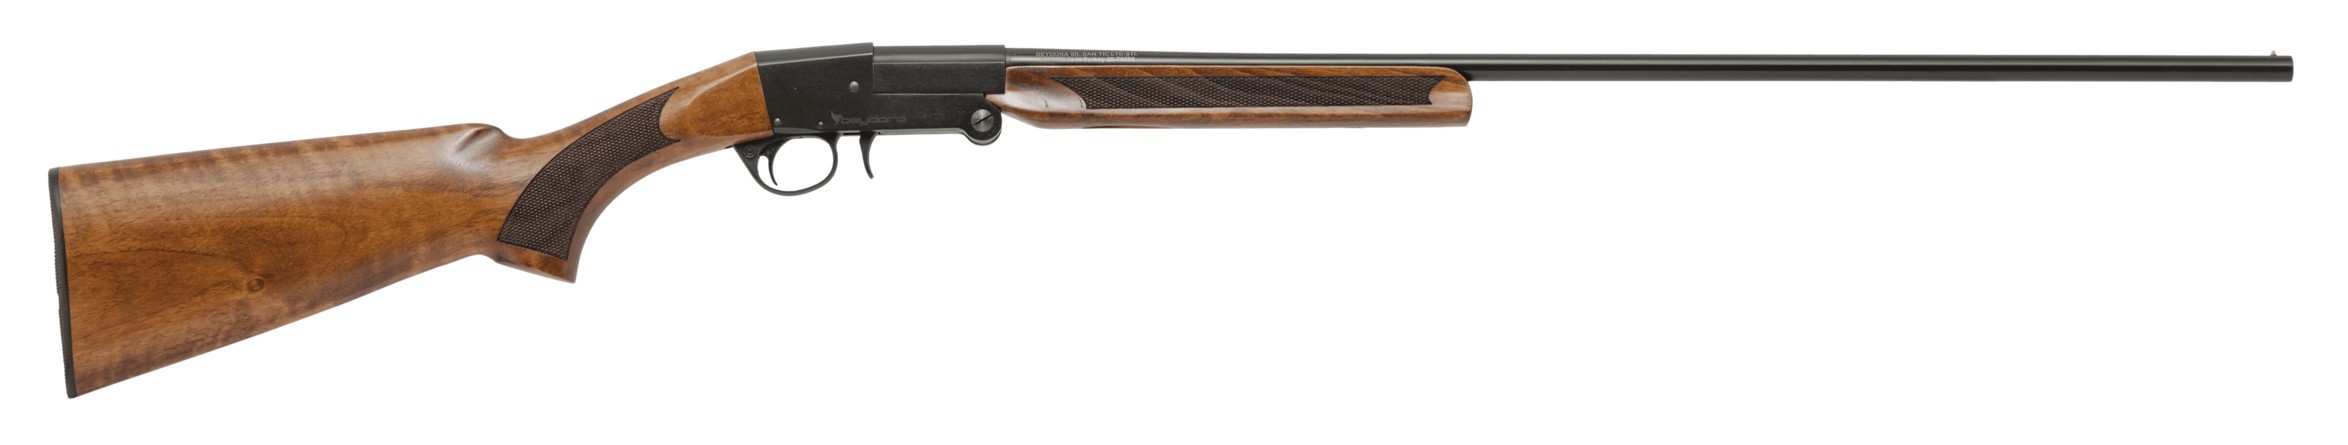 Ружье Beydora BDR 09 Wood 12x76 510мм черный ресивер - фото 1